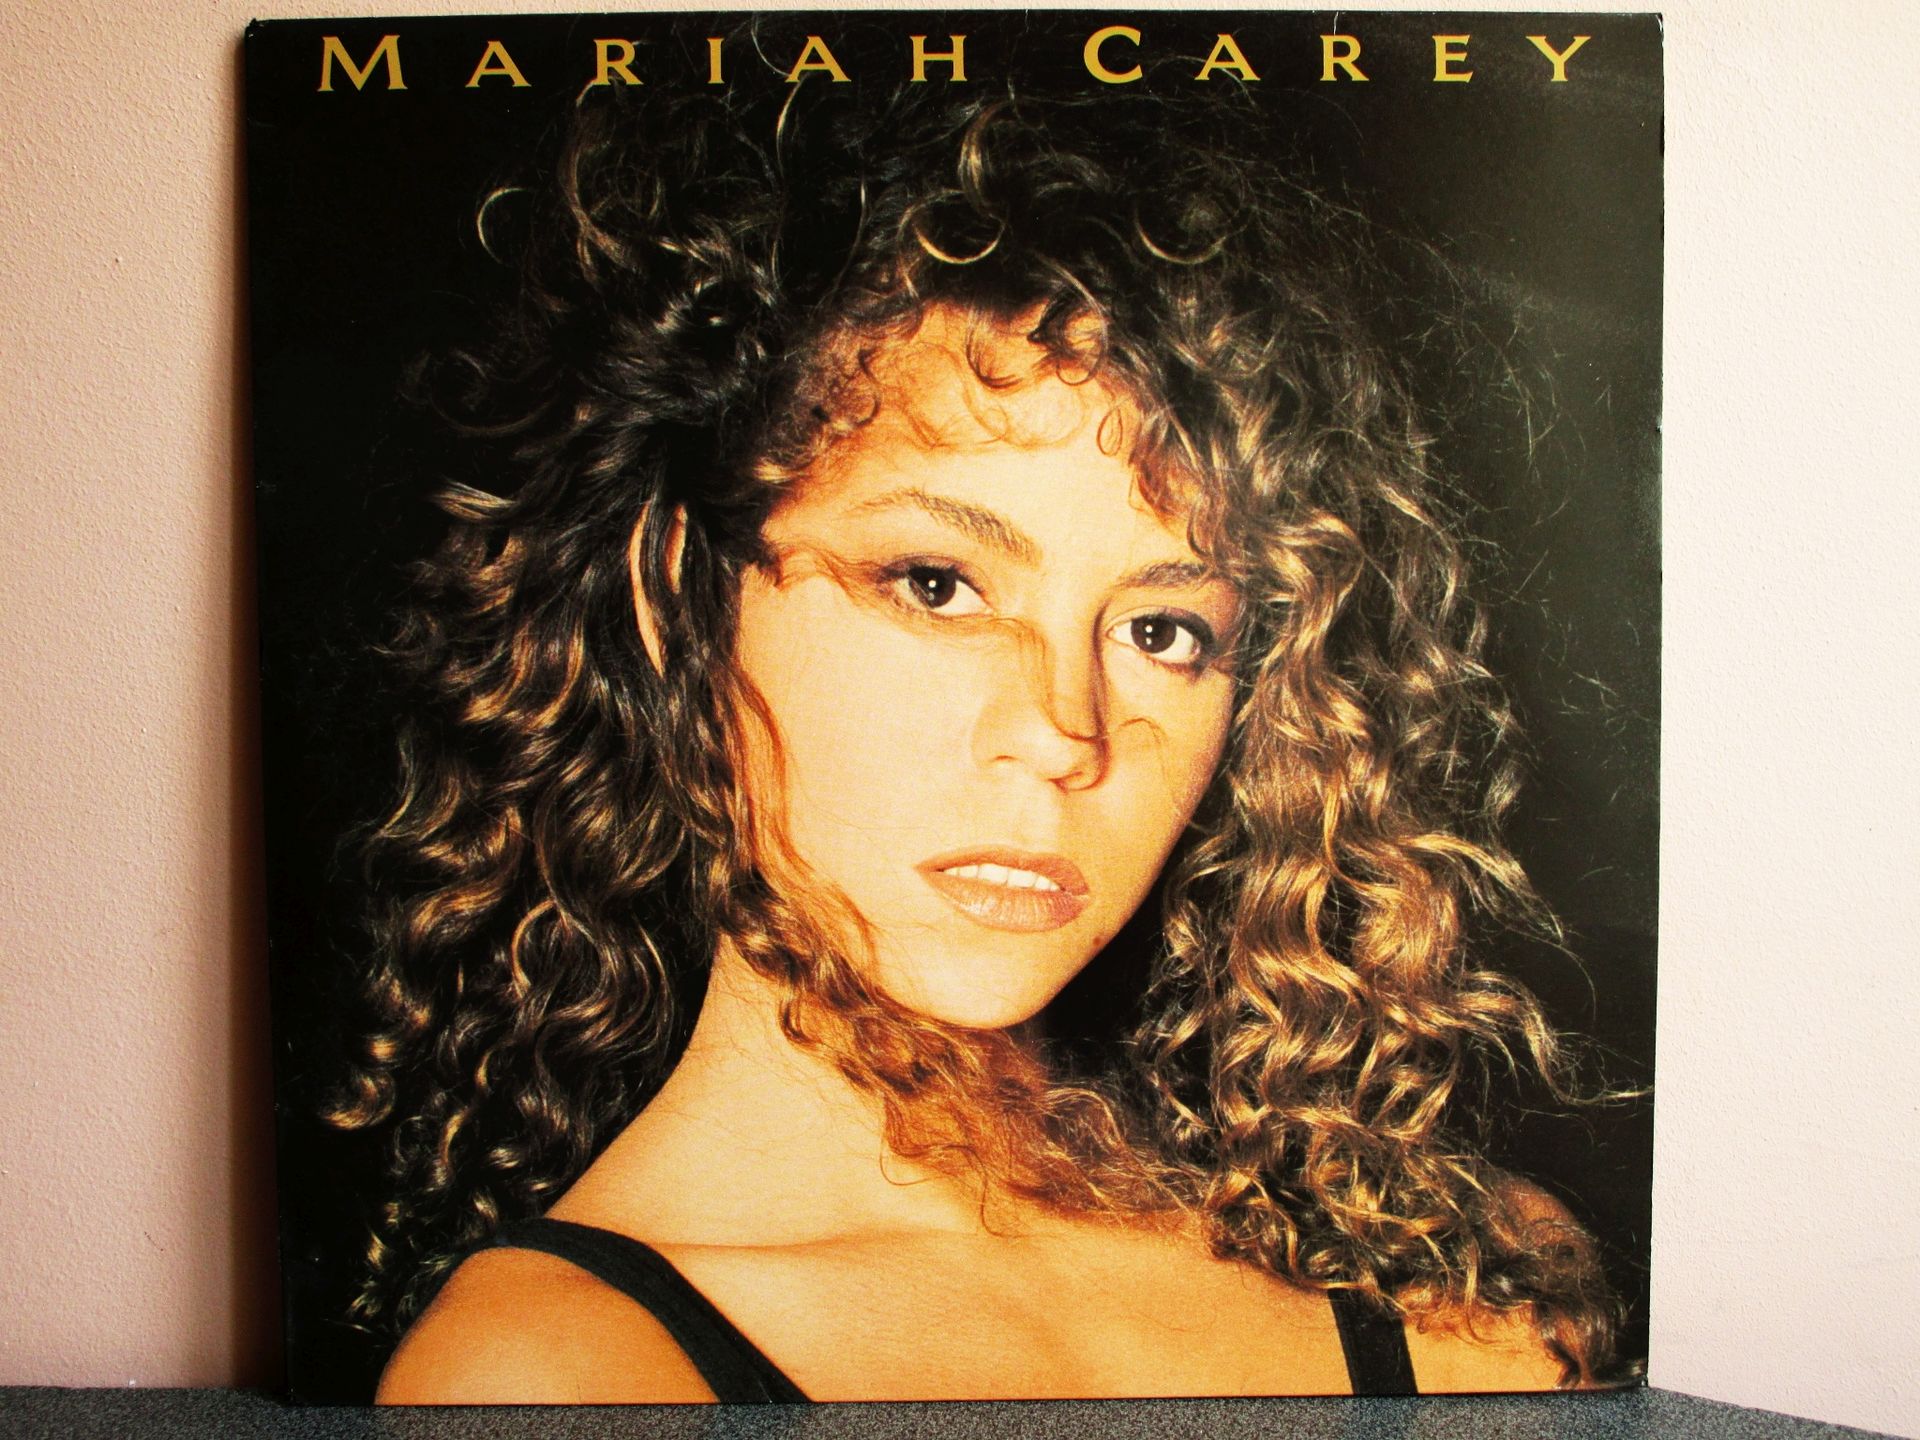 1920px x 1440px - Mariah Carey - Mariah Carey (162159580) - Osta.ee